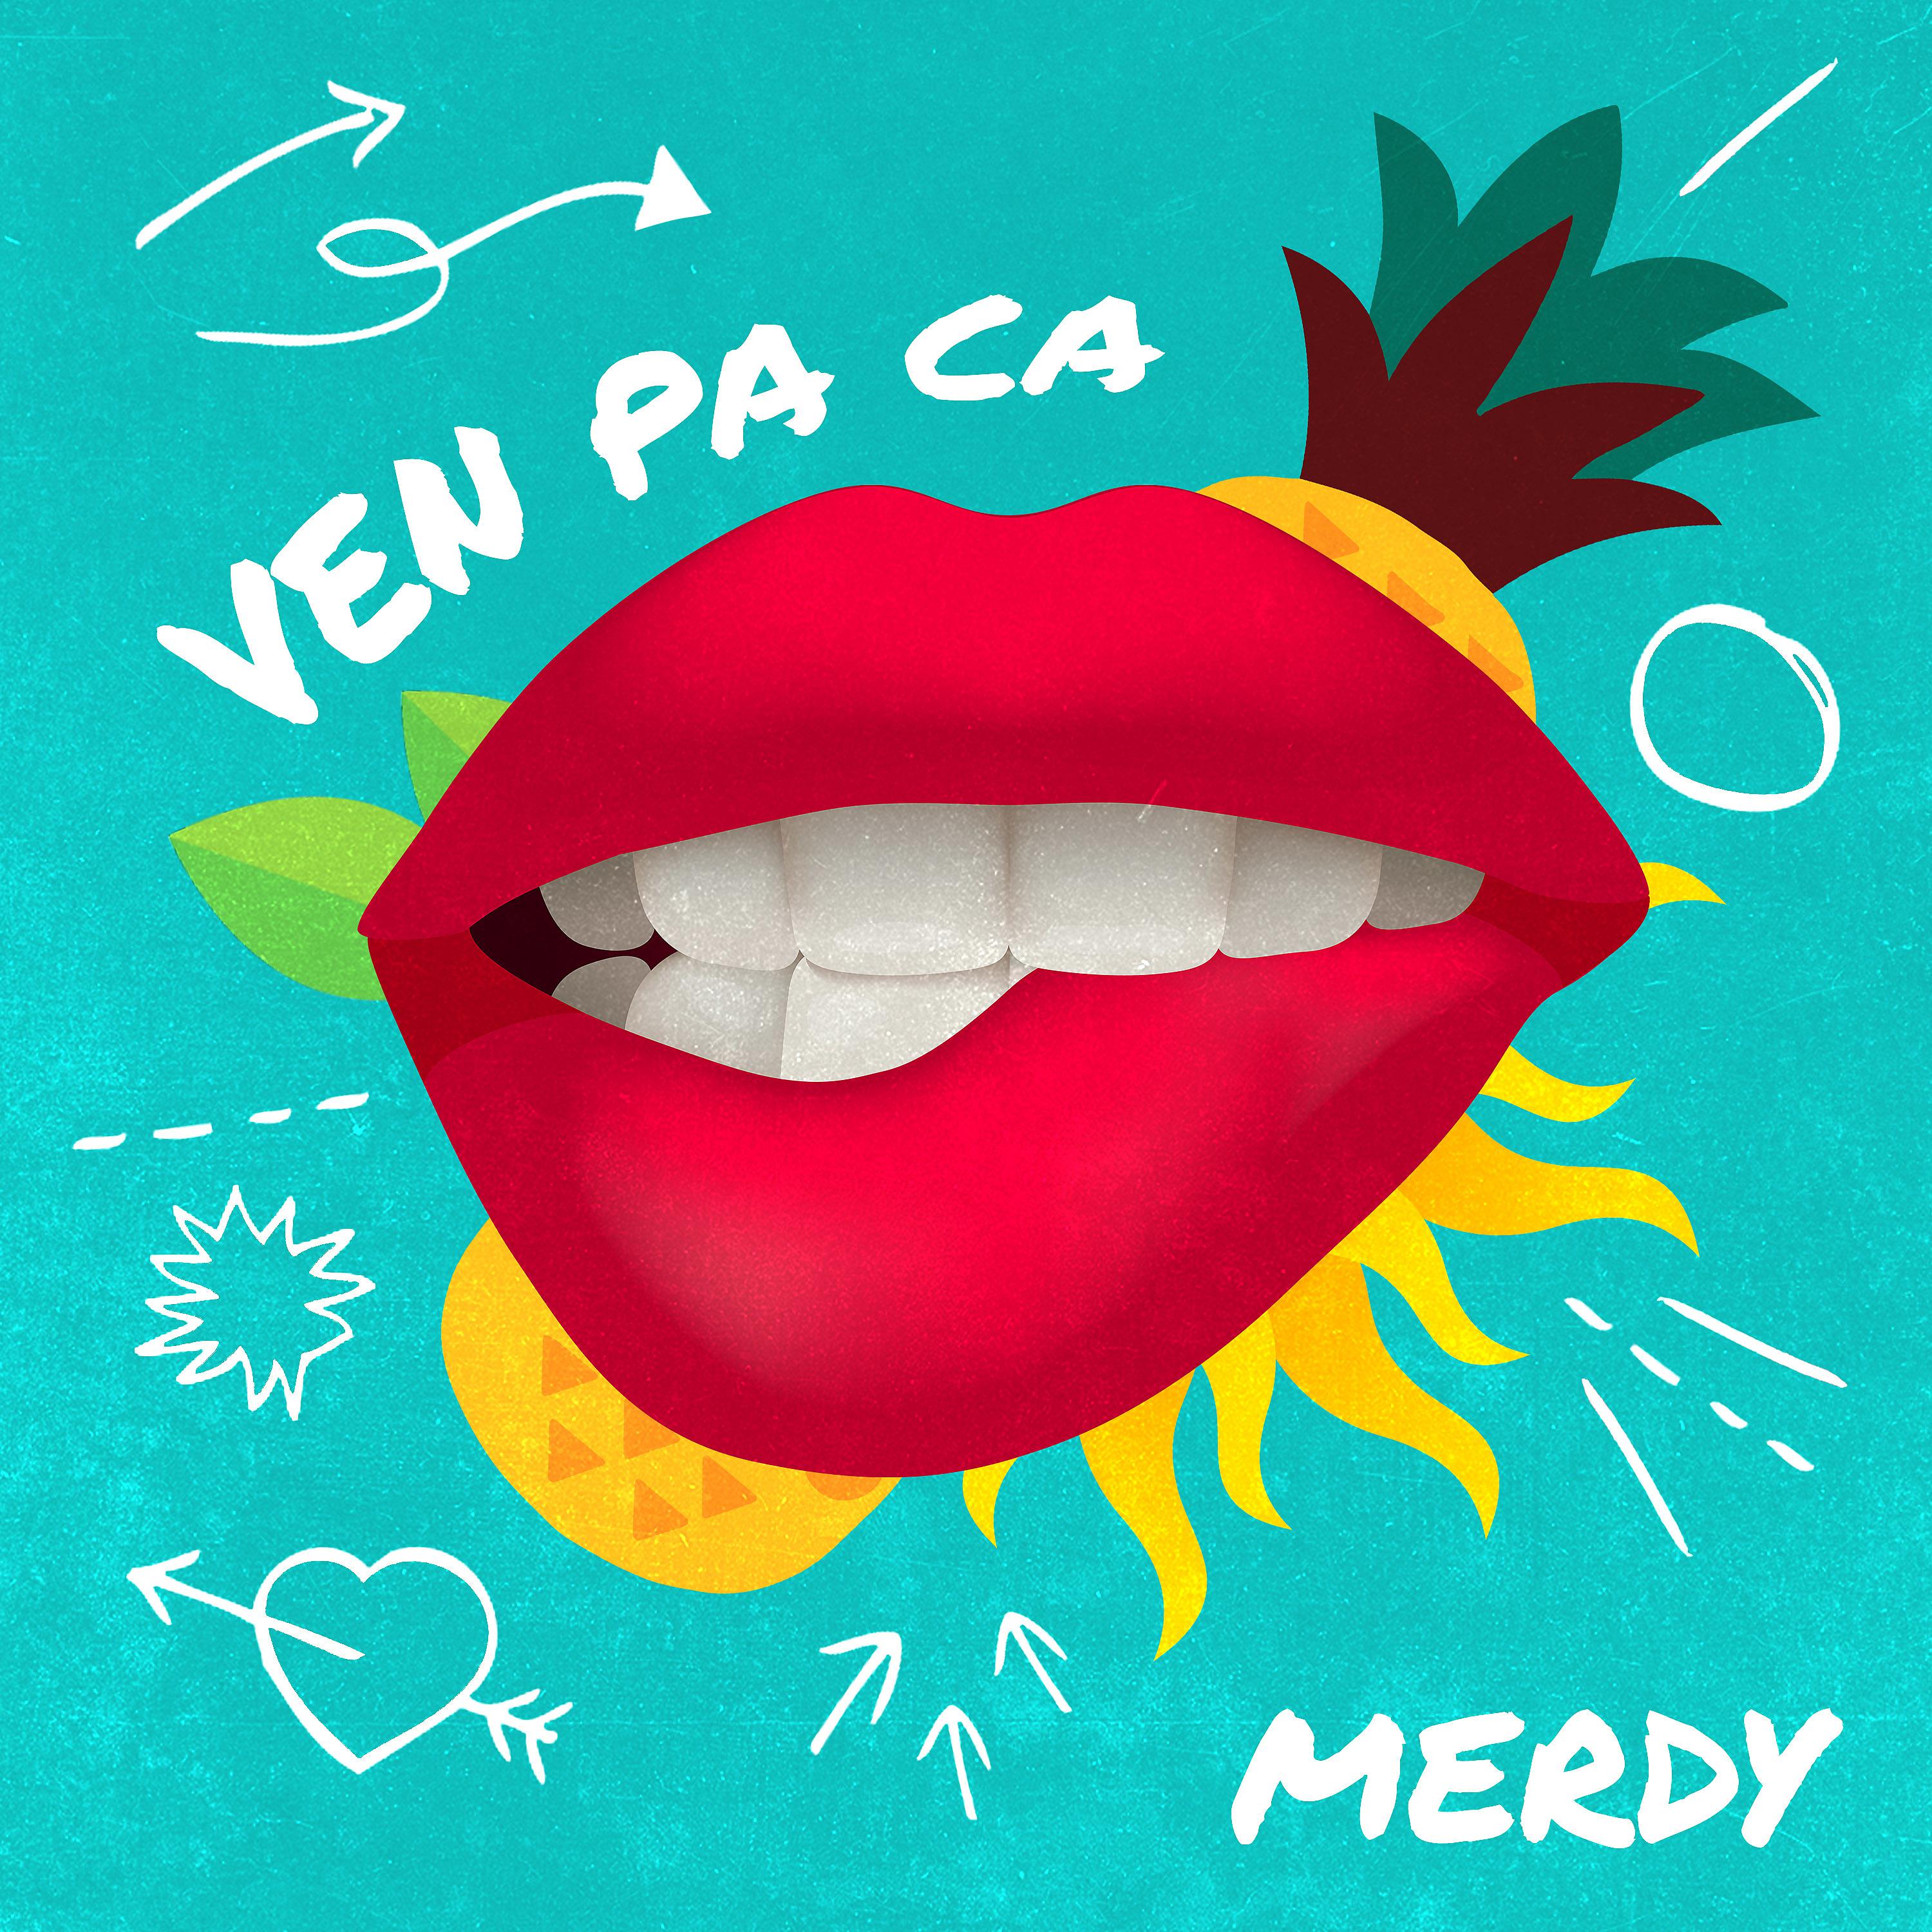 Постер альбома Ven Pa Ca